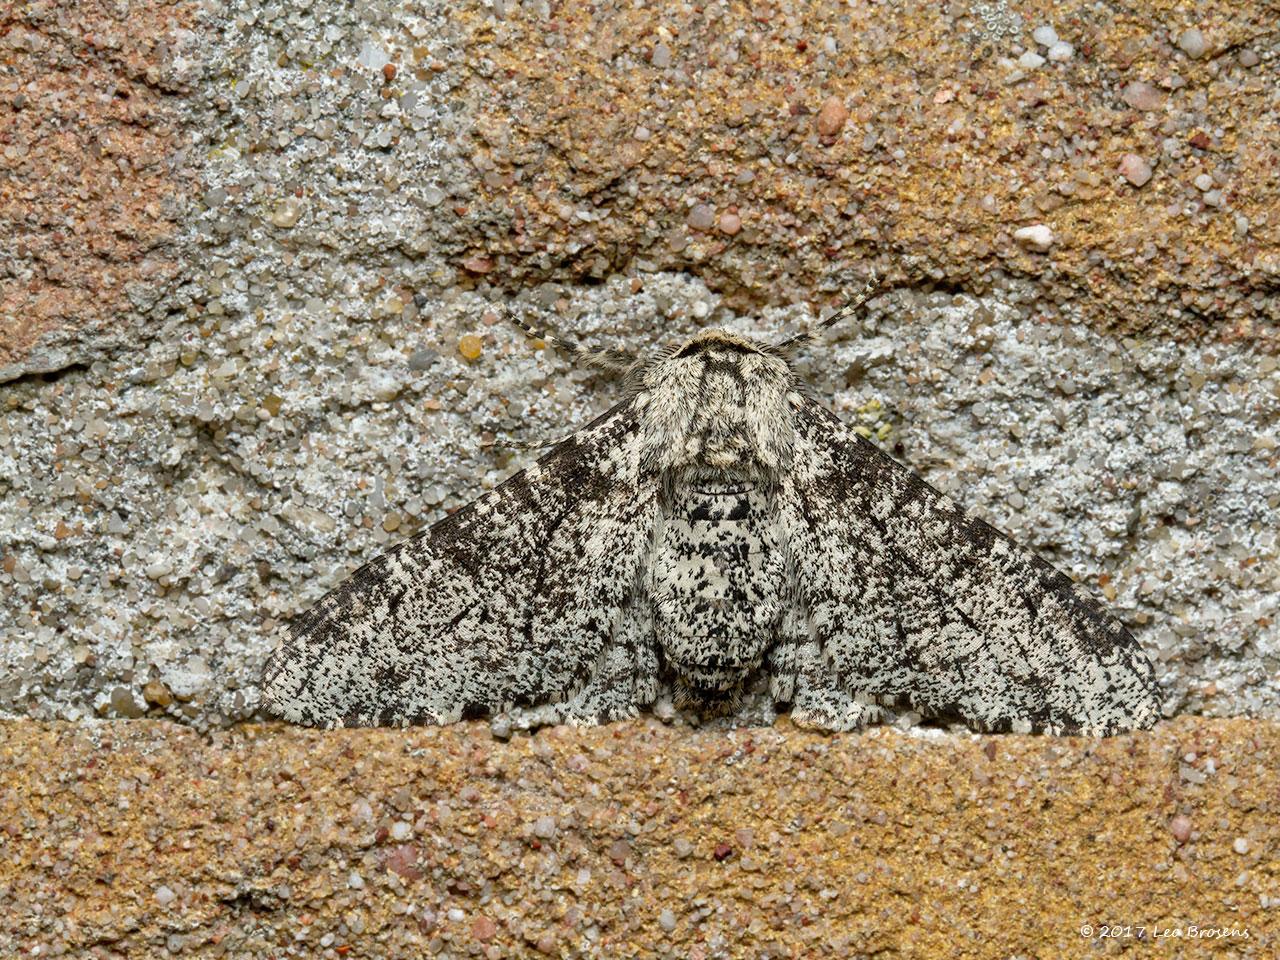 Peper-en-zout-vlinder-20150718g1280_MG_1345acrfb.jpg